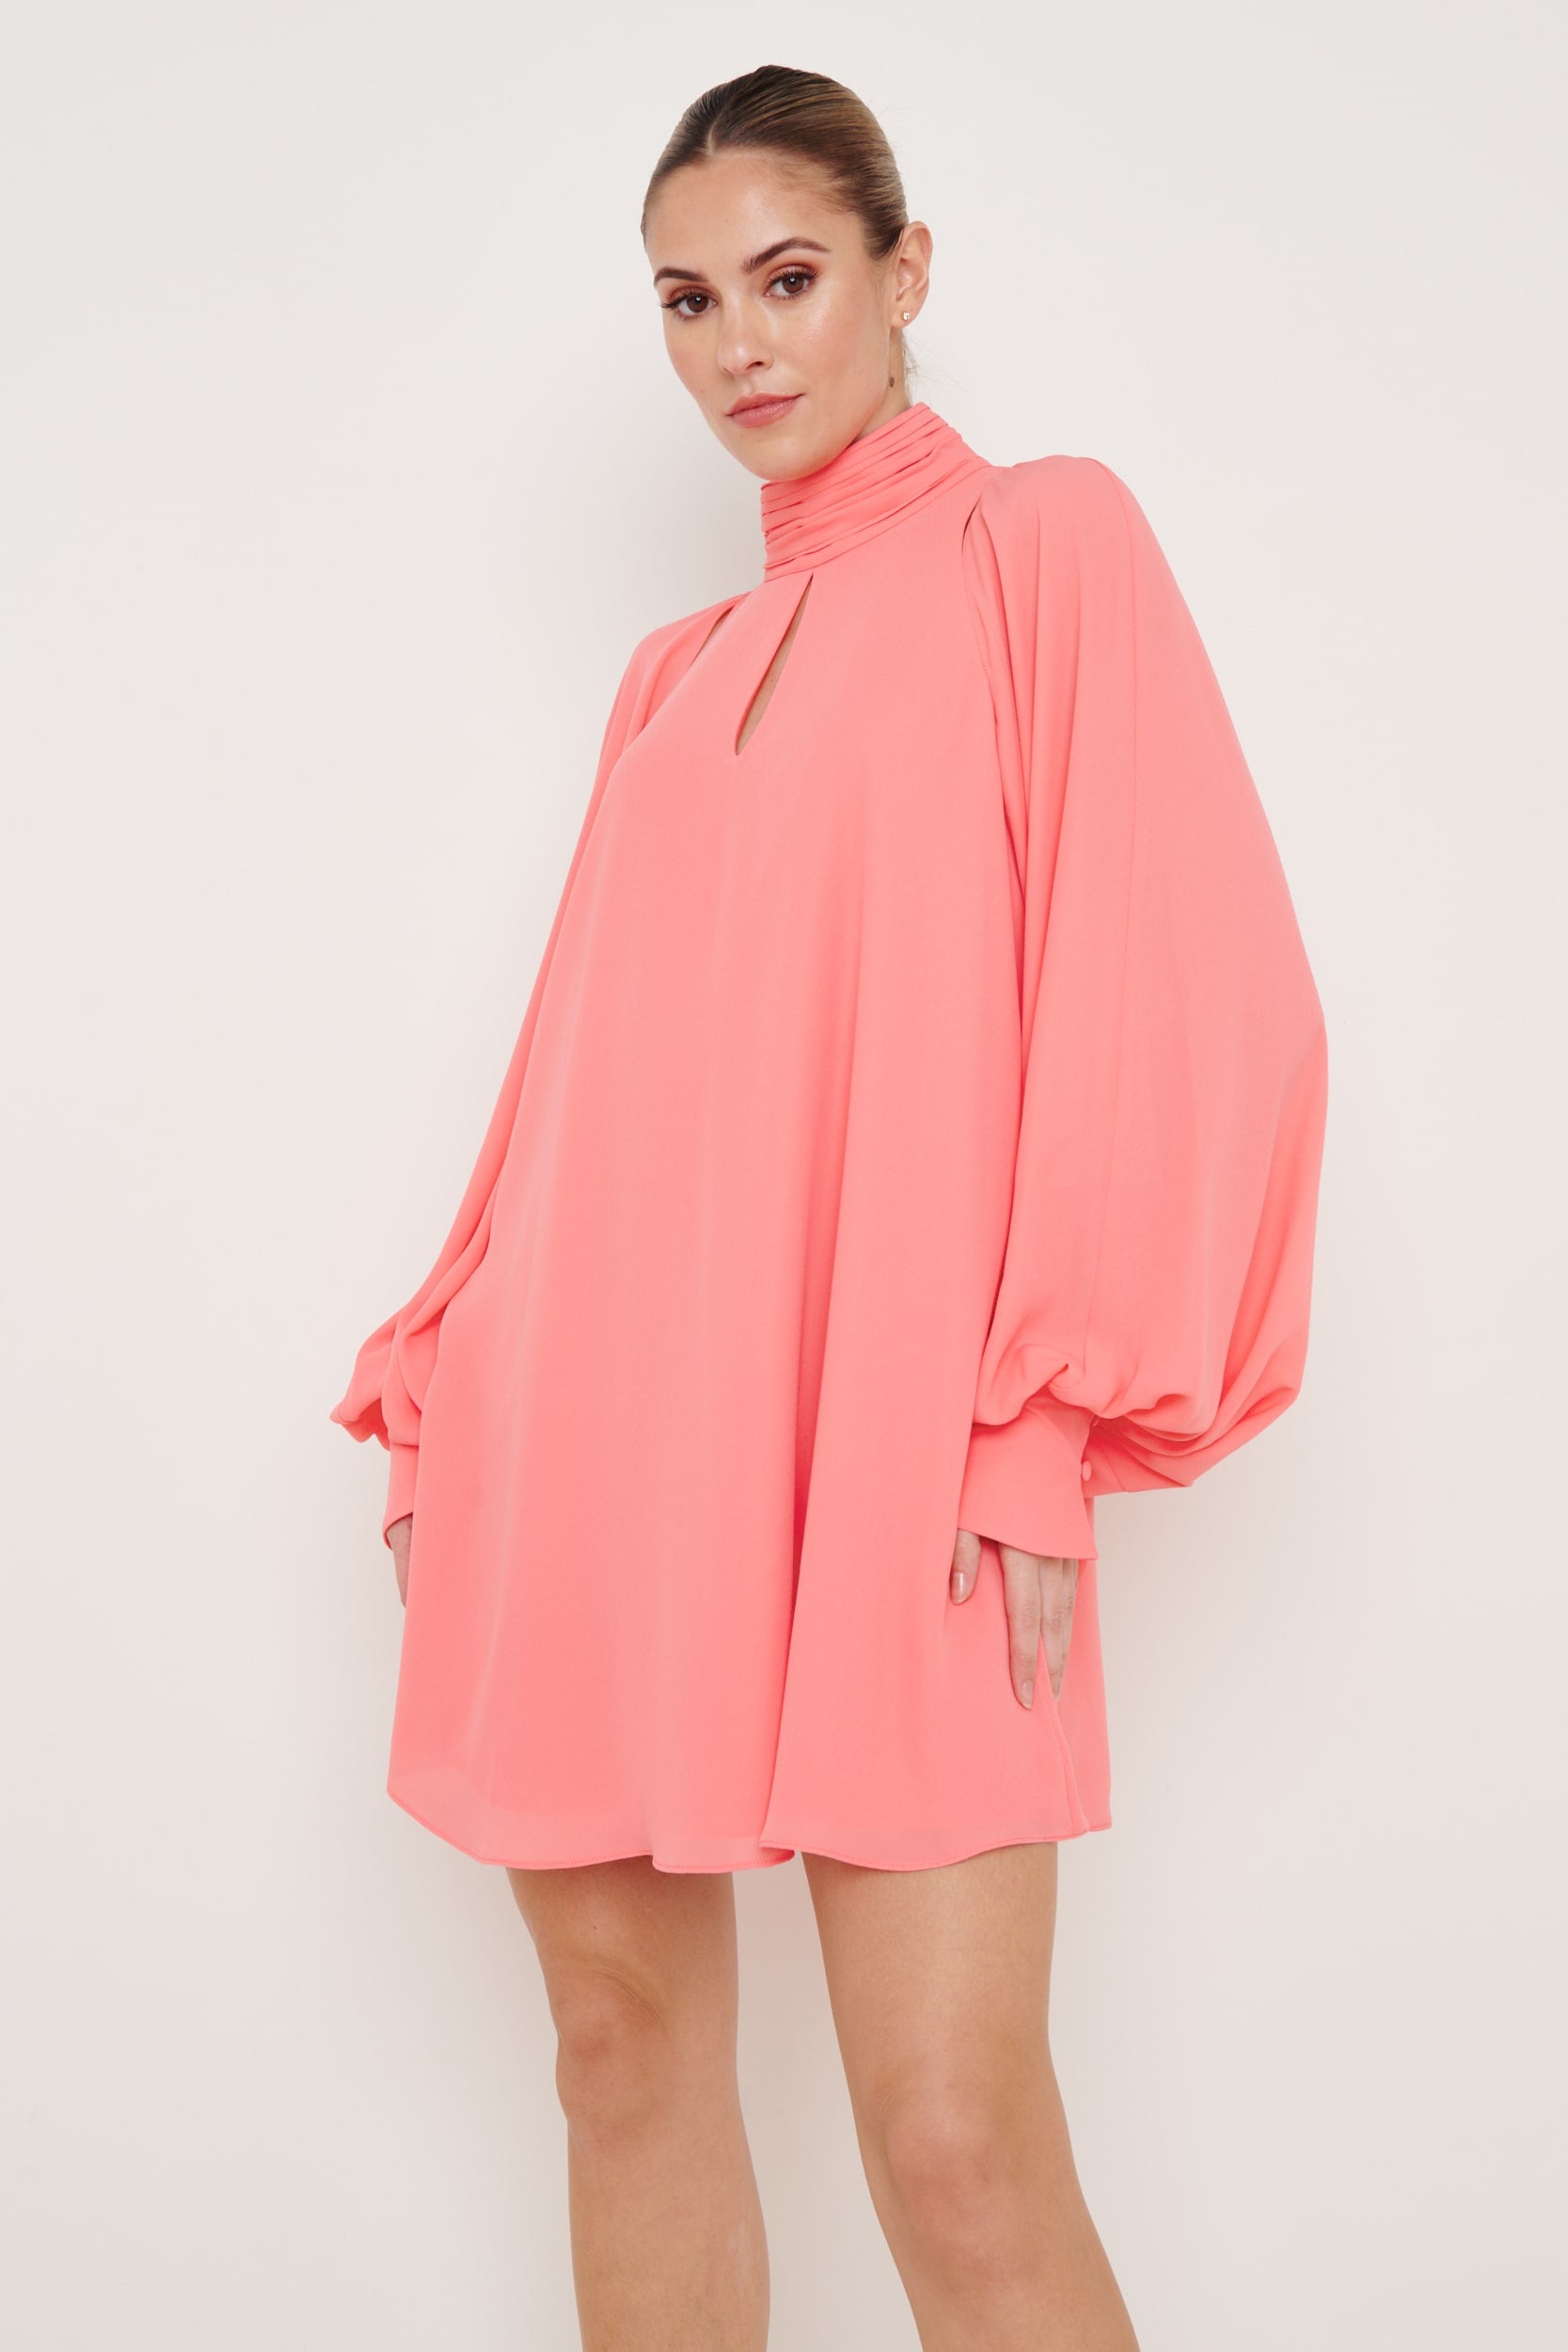 Romy Chiffon Mini Dress - Coral, 8